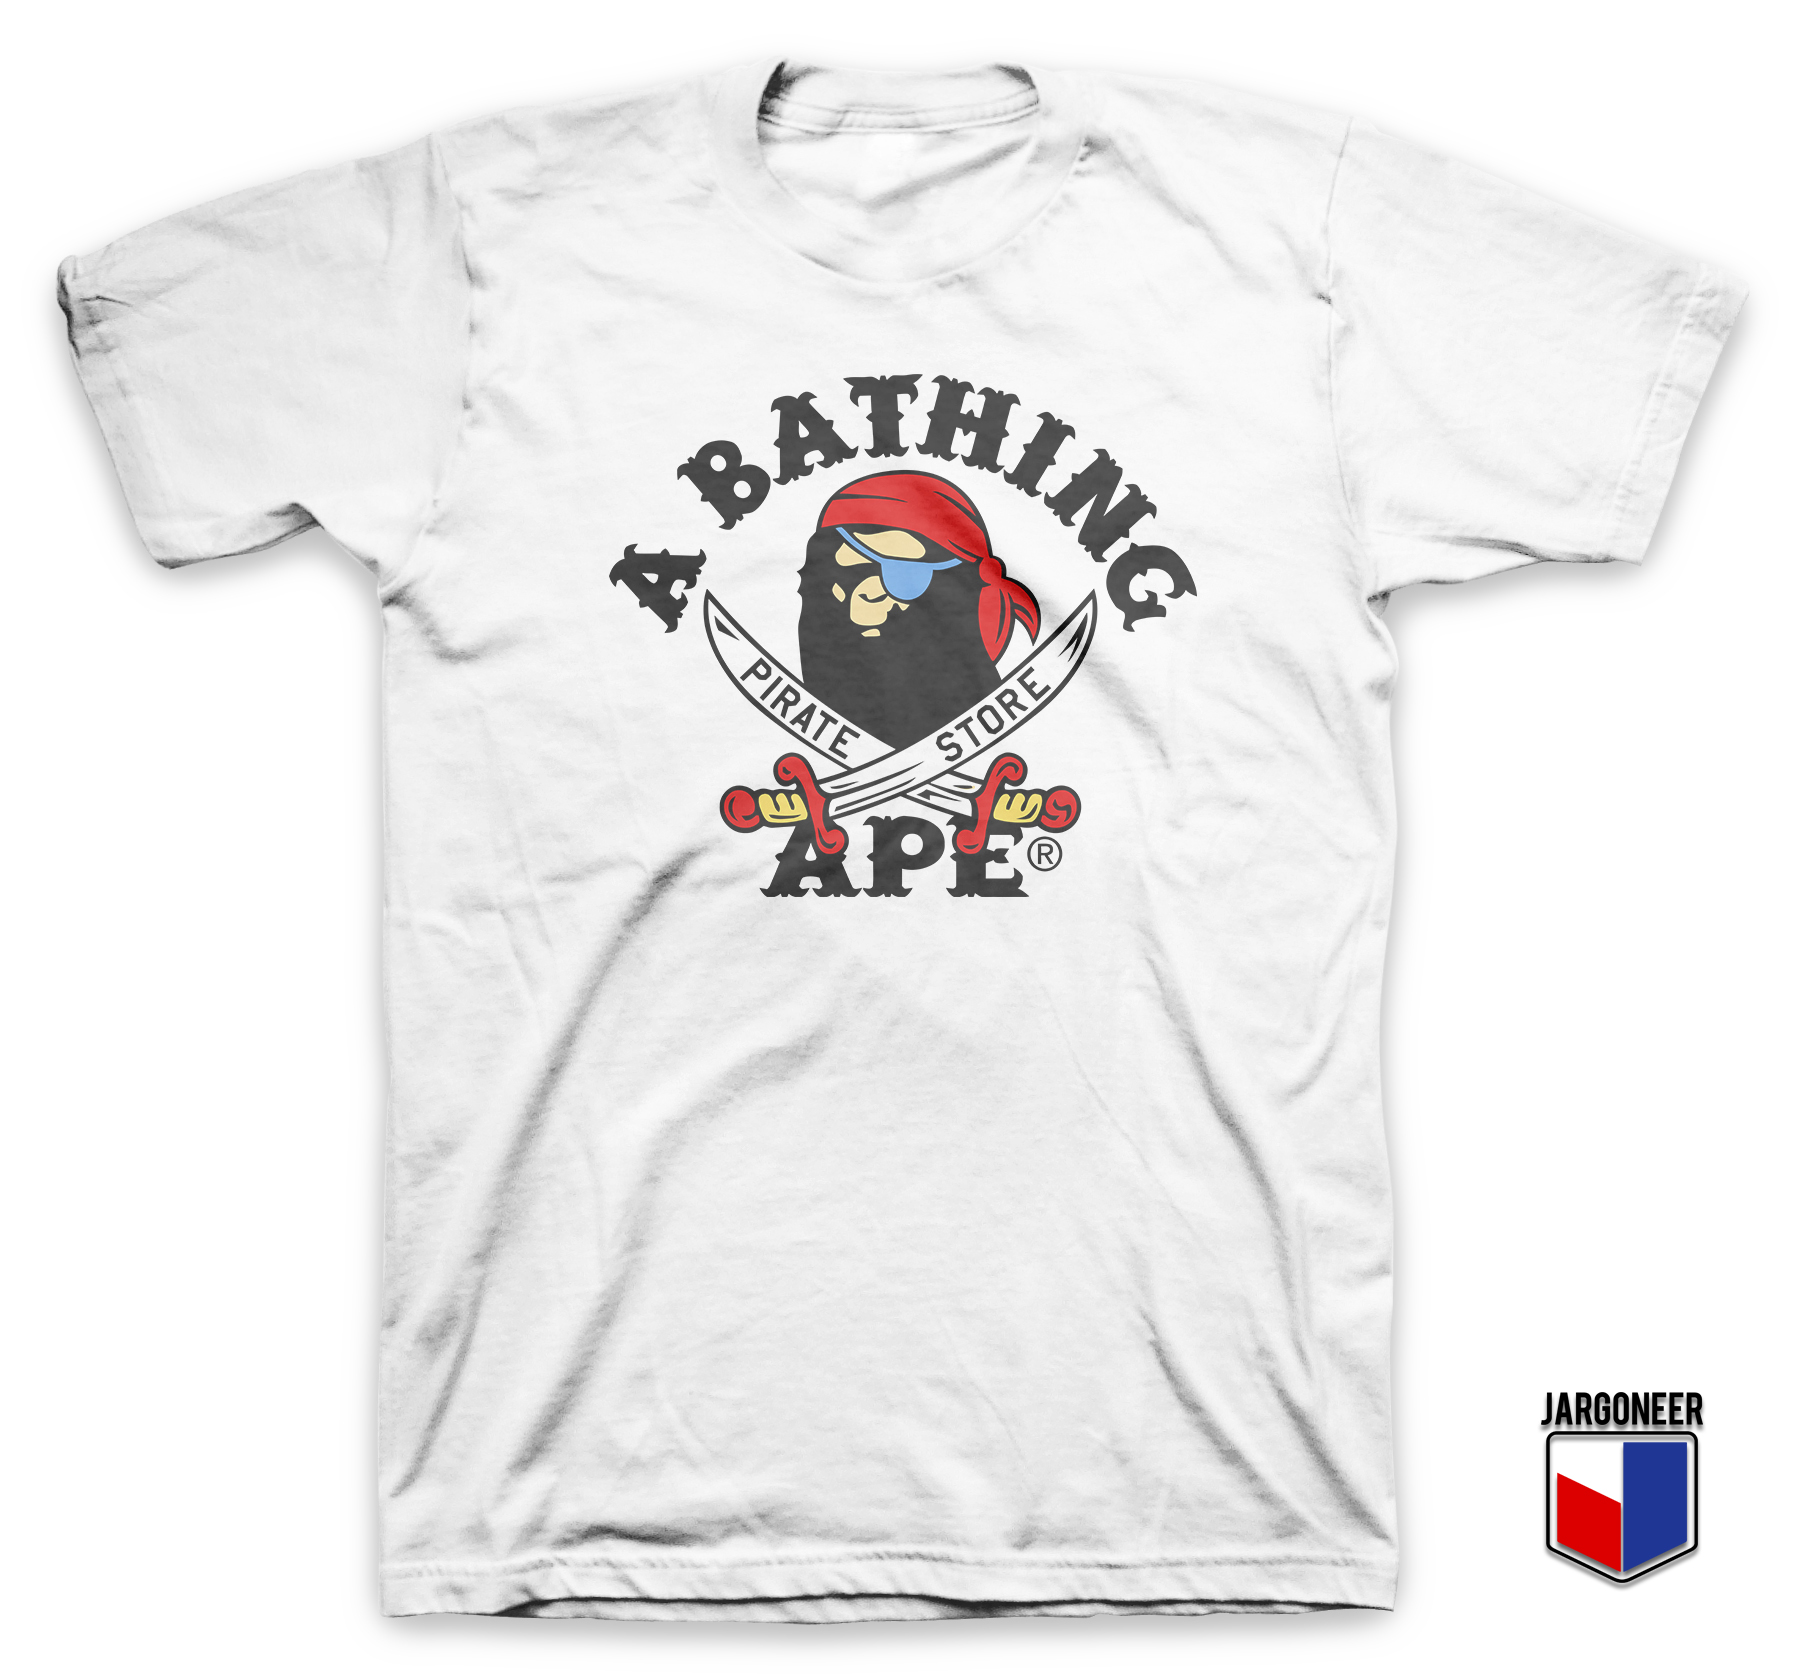 Bape Pirate Store White T Shirt - Shop Unique Graphic Cool Shirt Designs